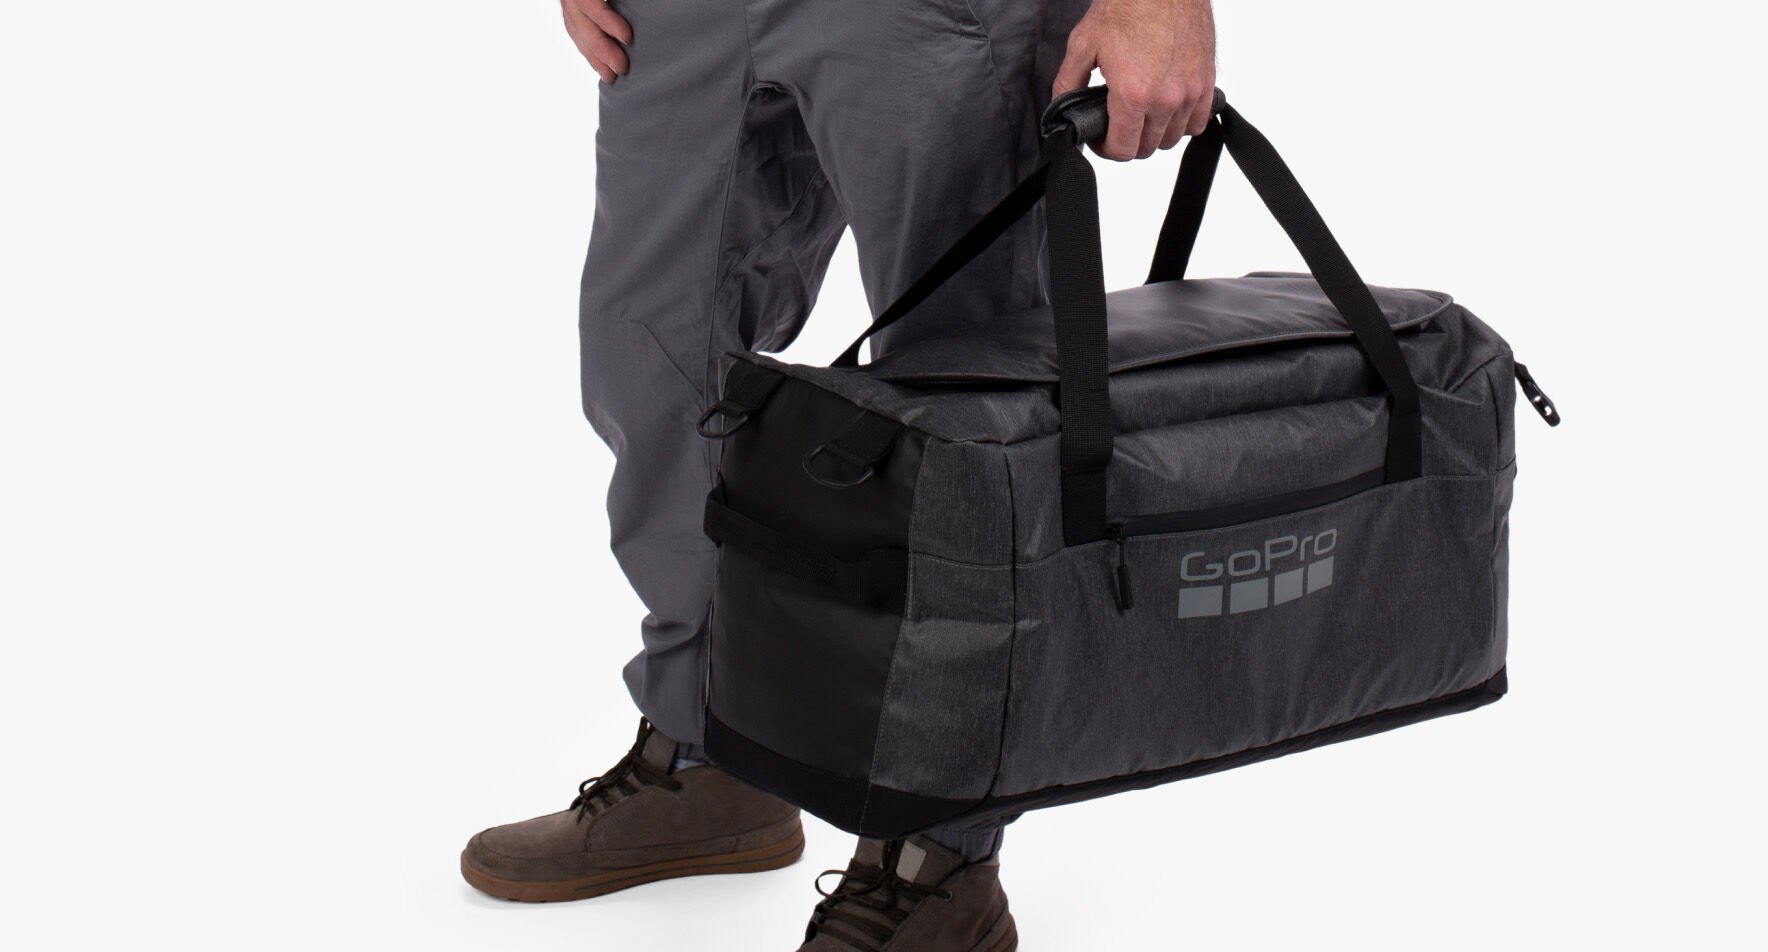 Nova mochila GoPro Mission da linha Lifestyle Gear de produtos.